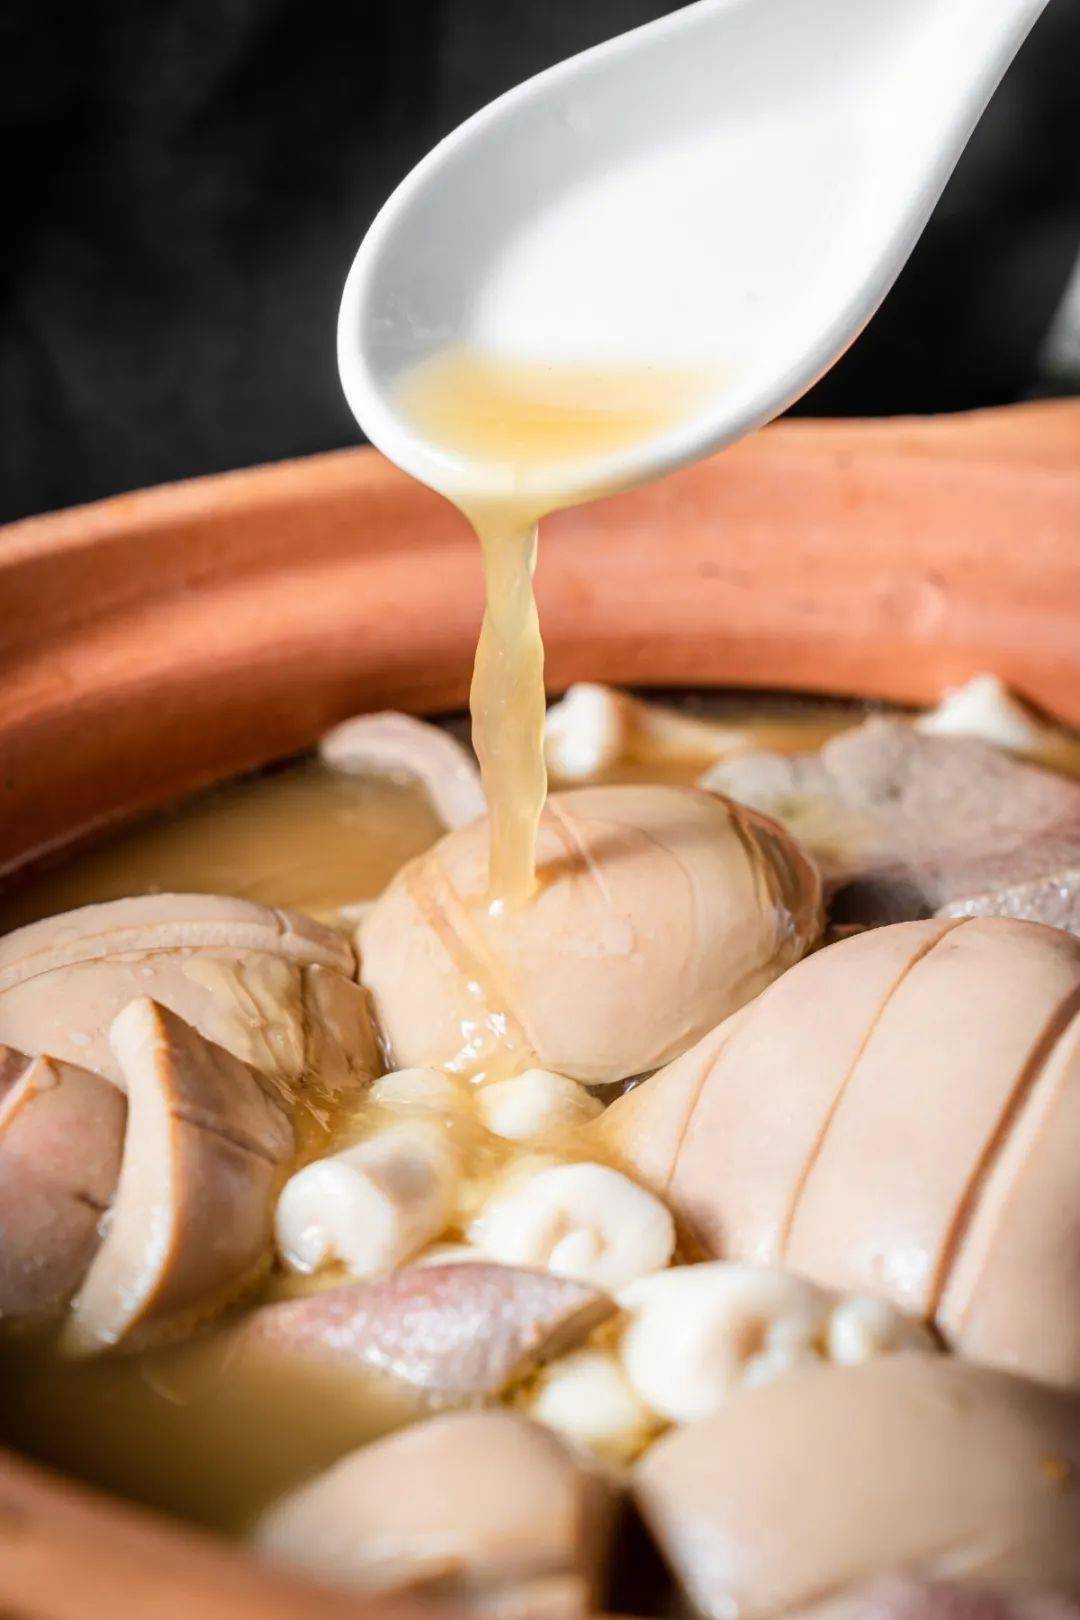 猪腰汤首先要品汤,传统高汤做底,每次上桌前要加入姜汁和胡椒驱寒去腥